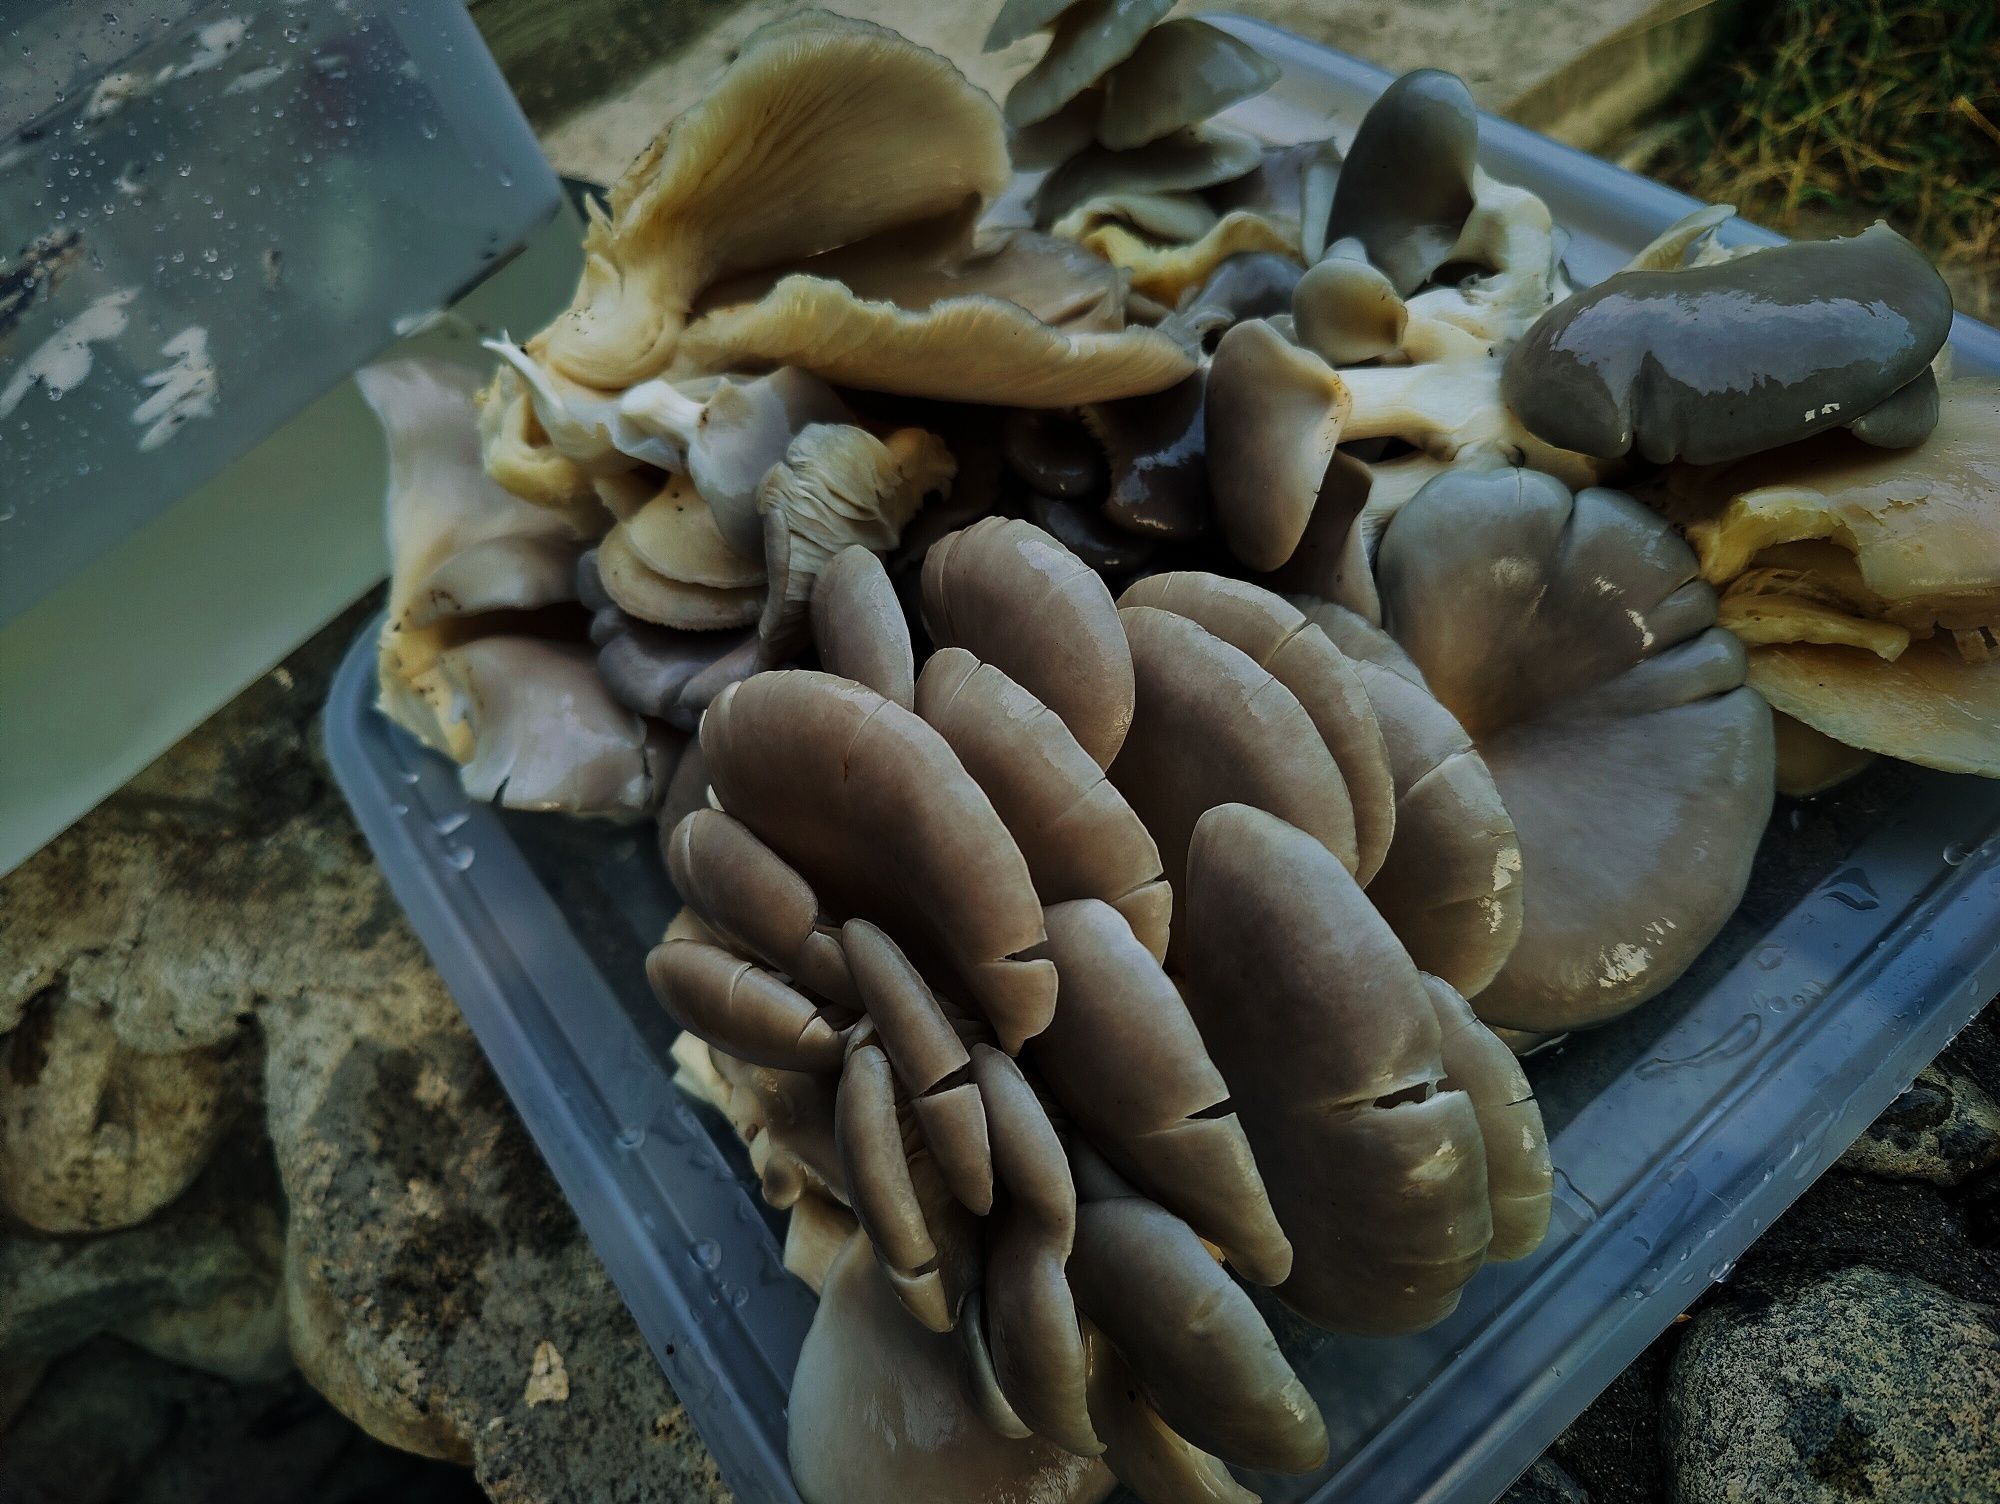 Păstrăv de fag murați (ciuperci murate)